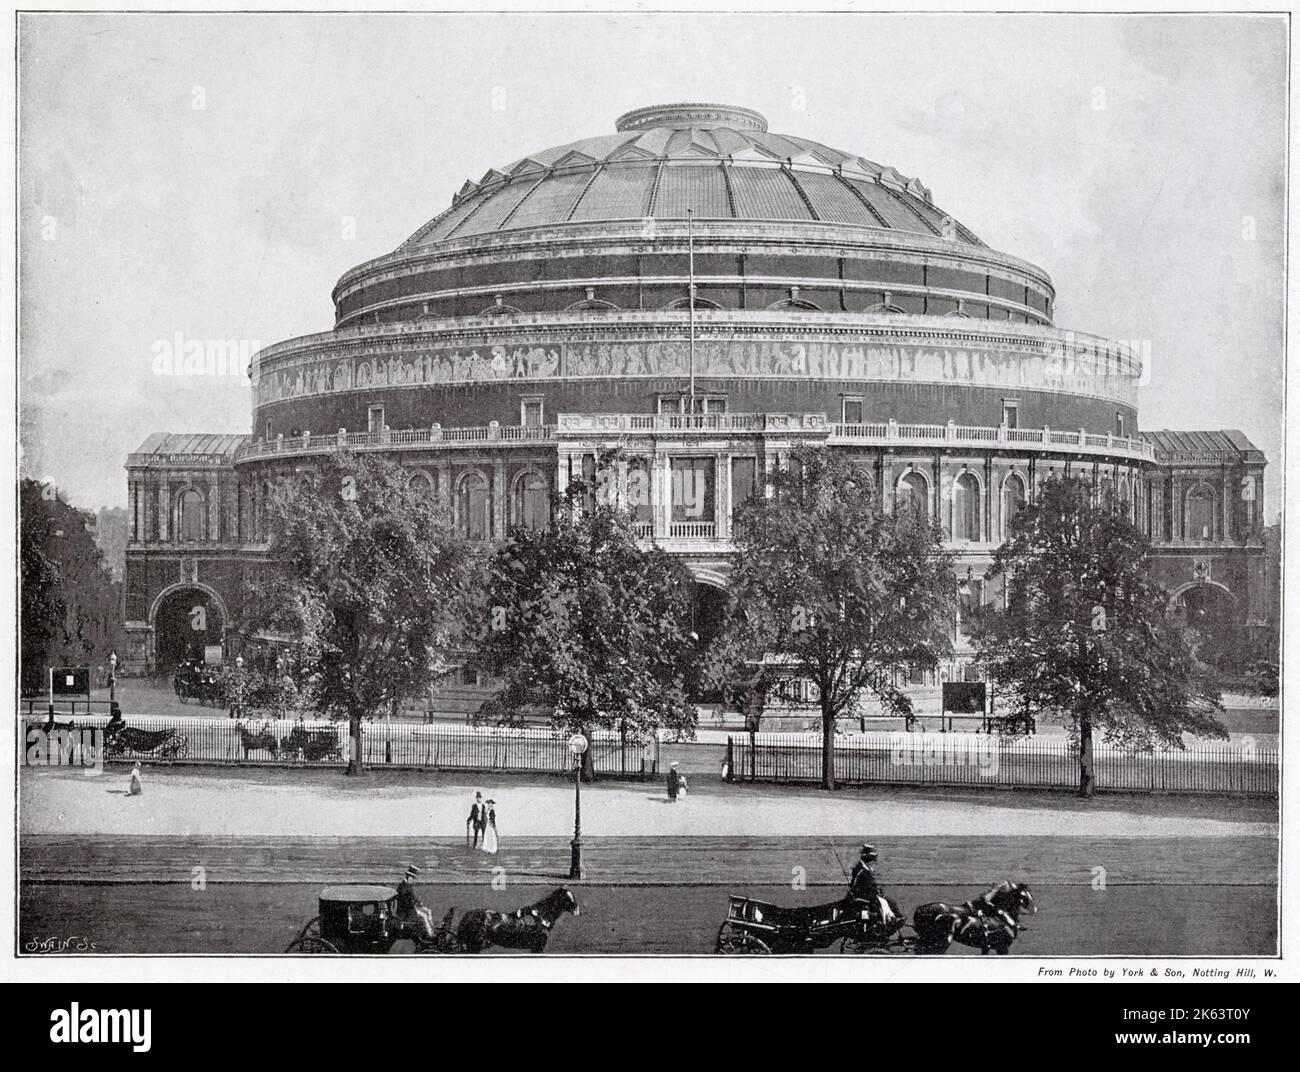 Royal Albert Hall, stile rinascimentale italiano in mattoni di terracotta. Apertura nel 1871, da parte della regina Vittoria, dieci anni dopo la morte di suo marito il principe Alberto. Foto Stock